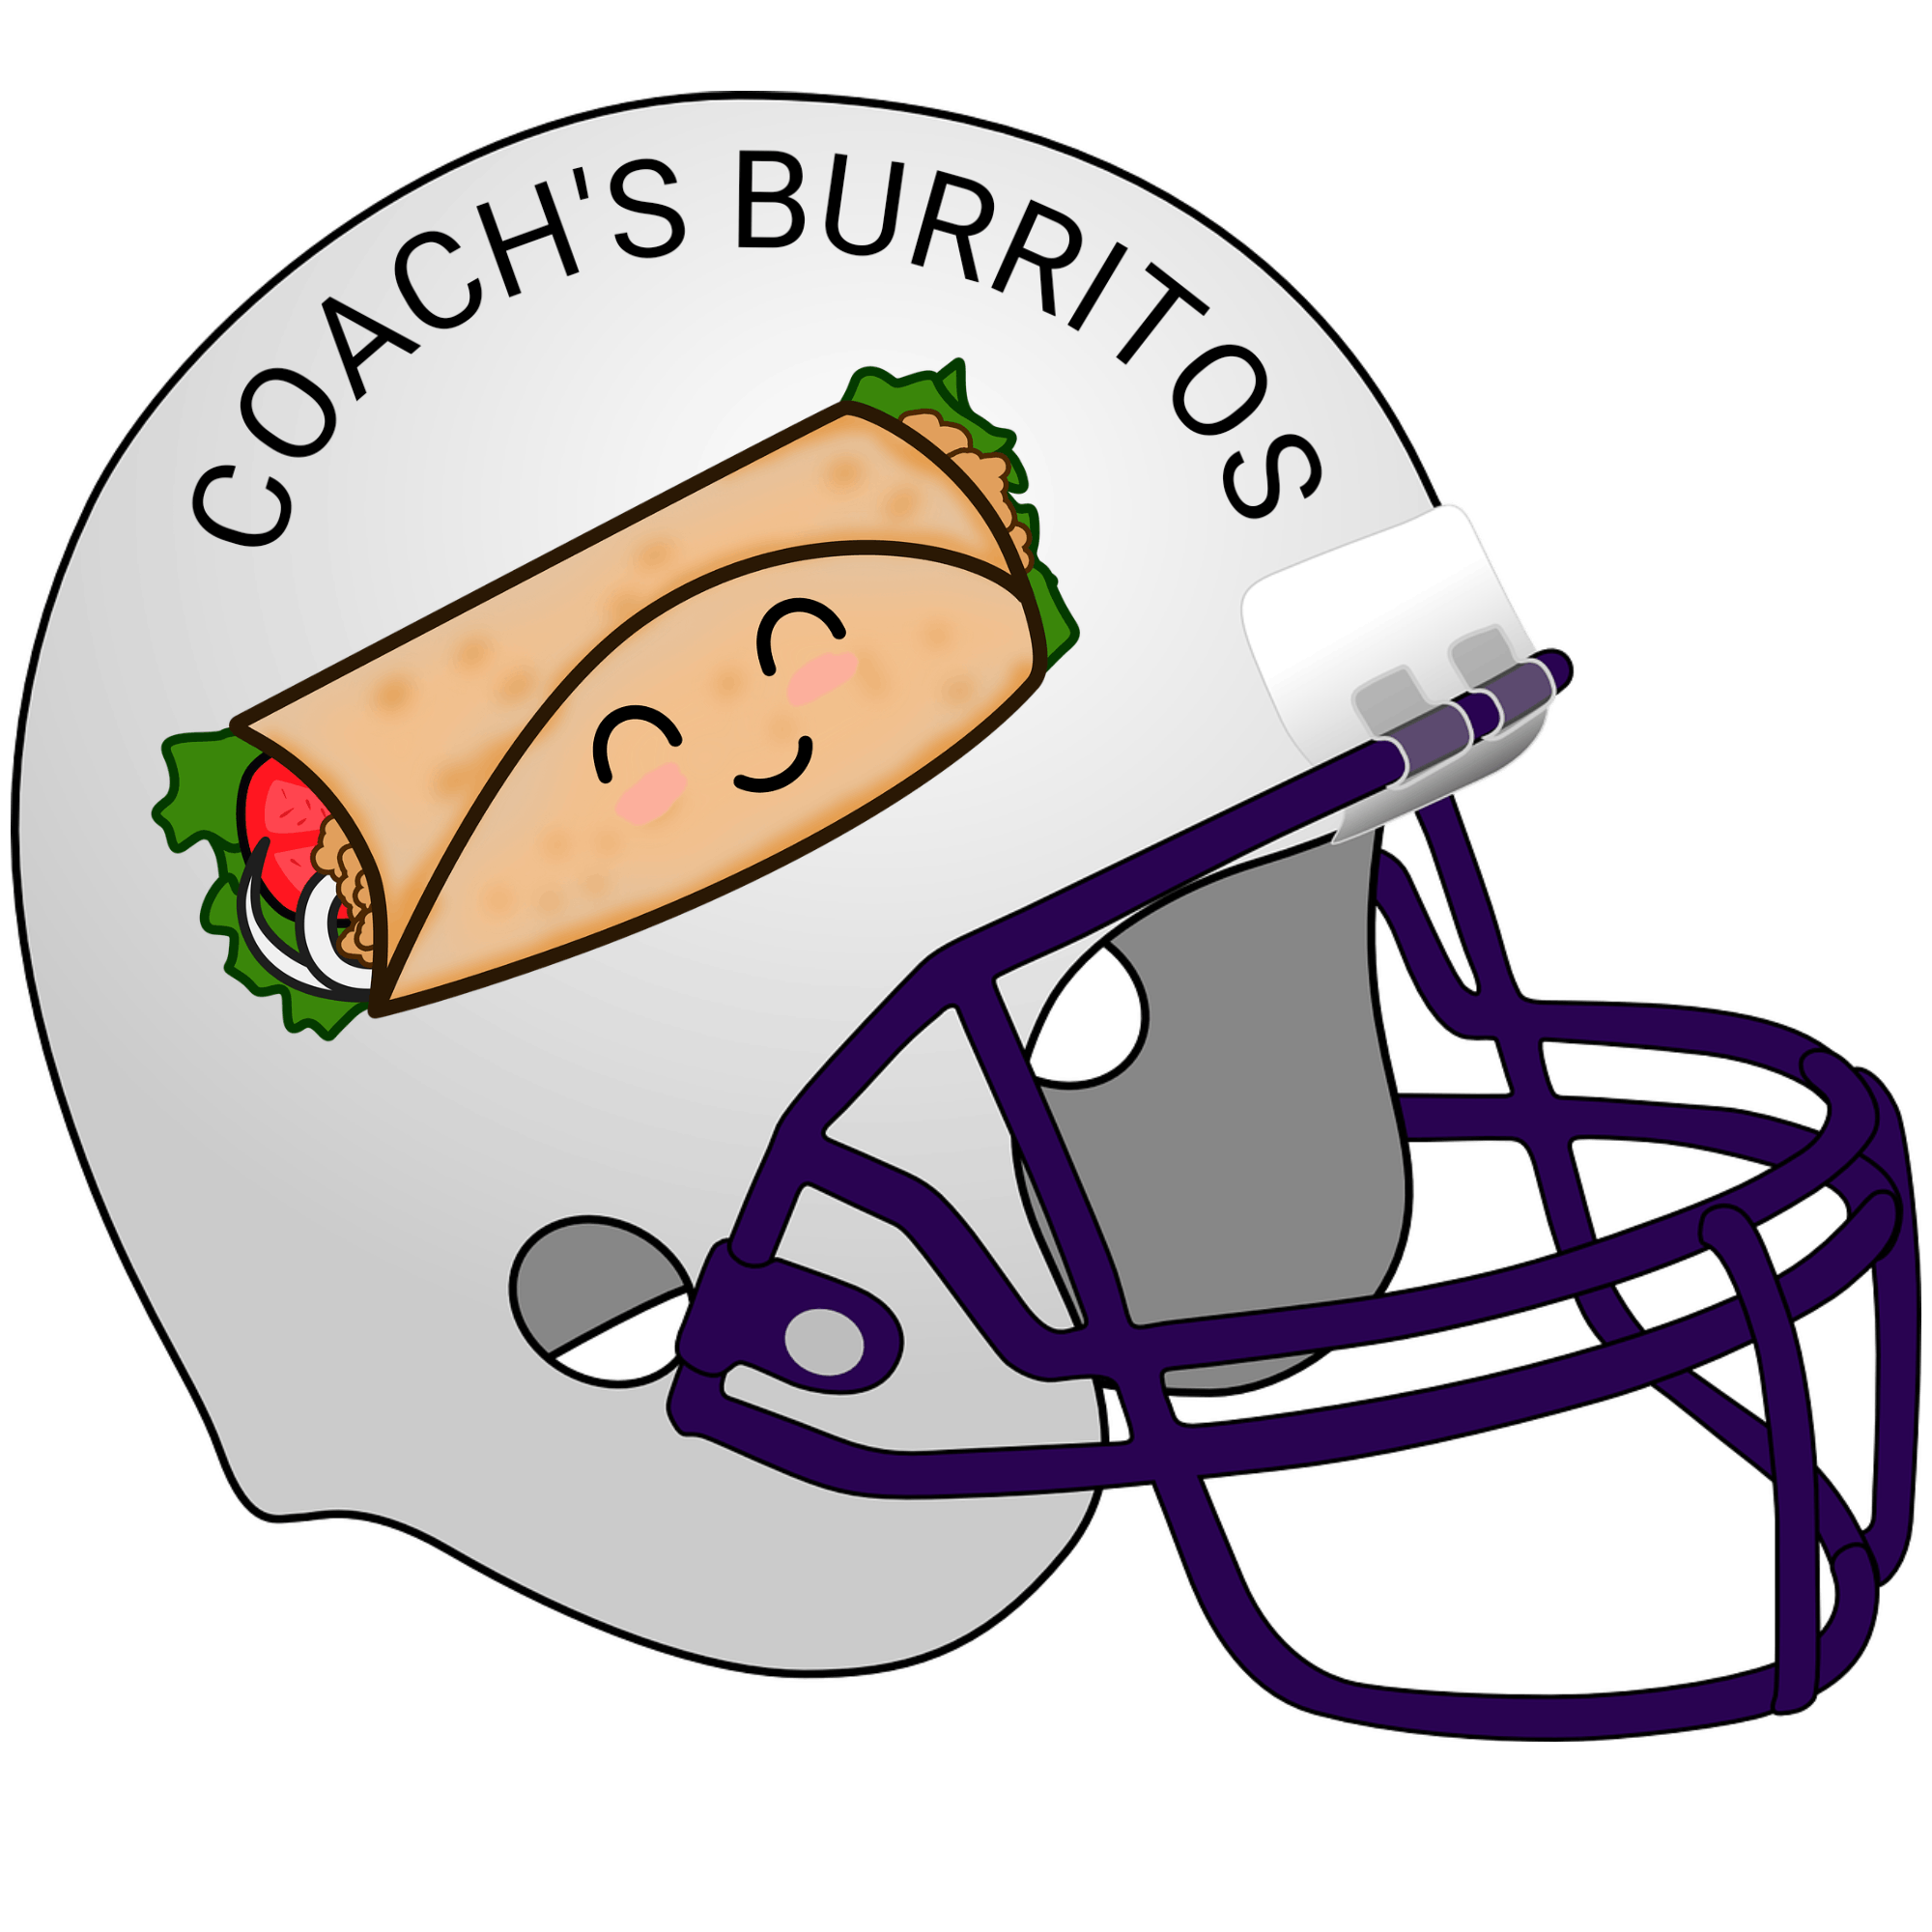 Coach's Burritos